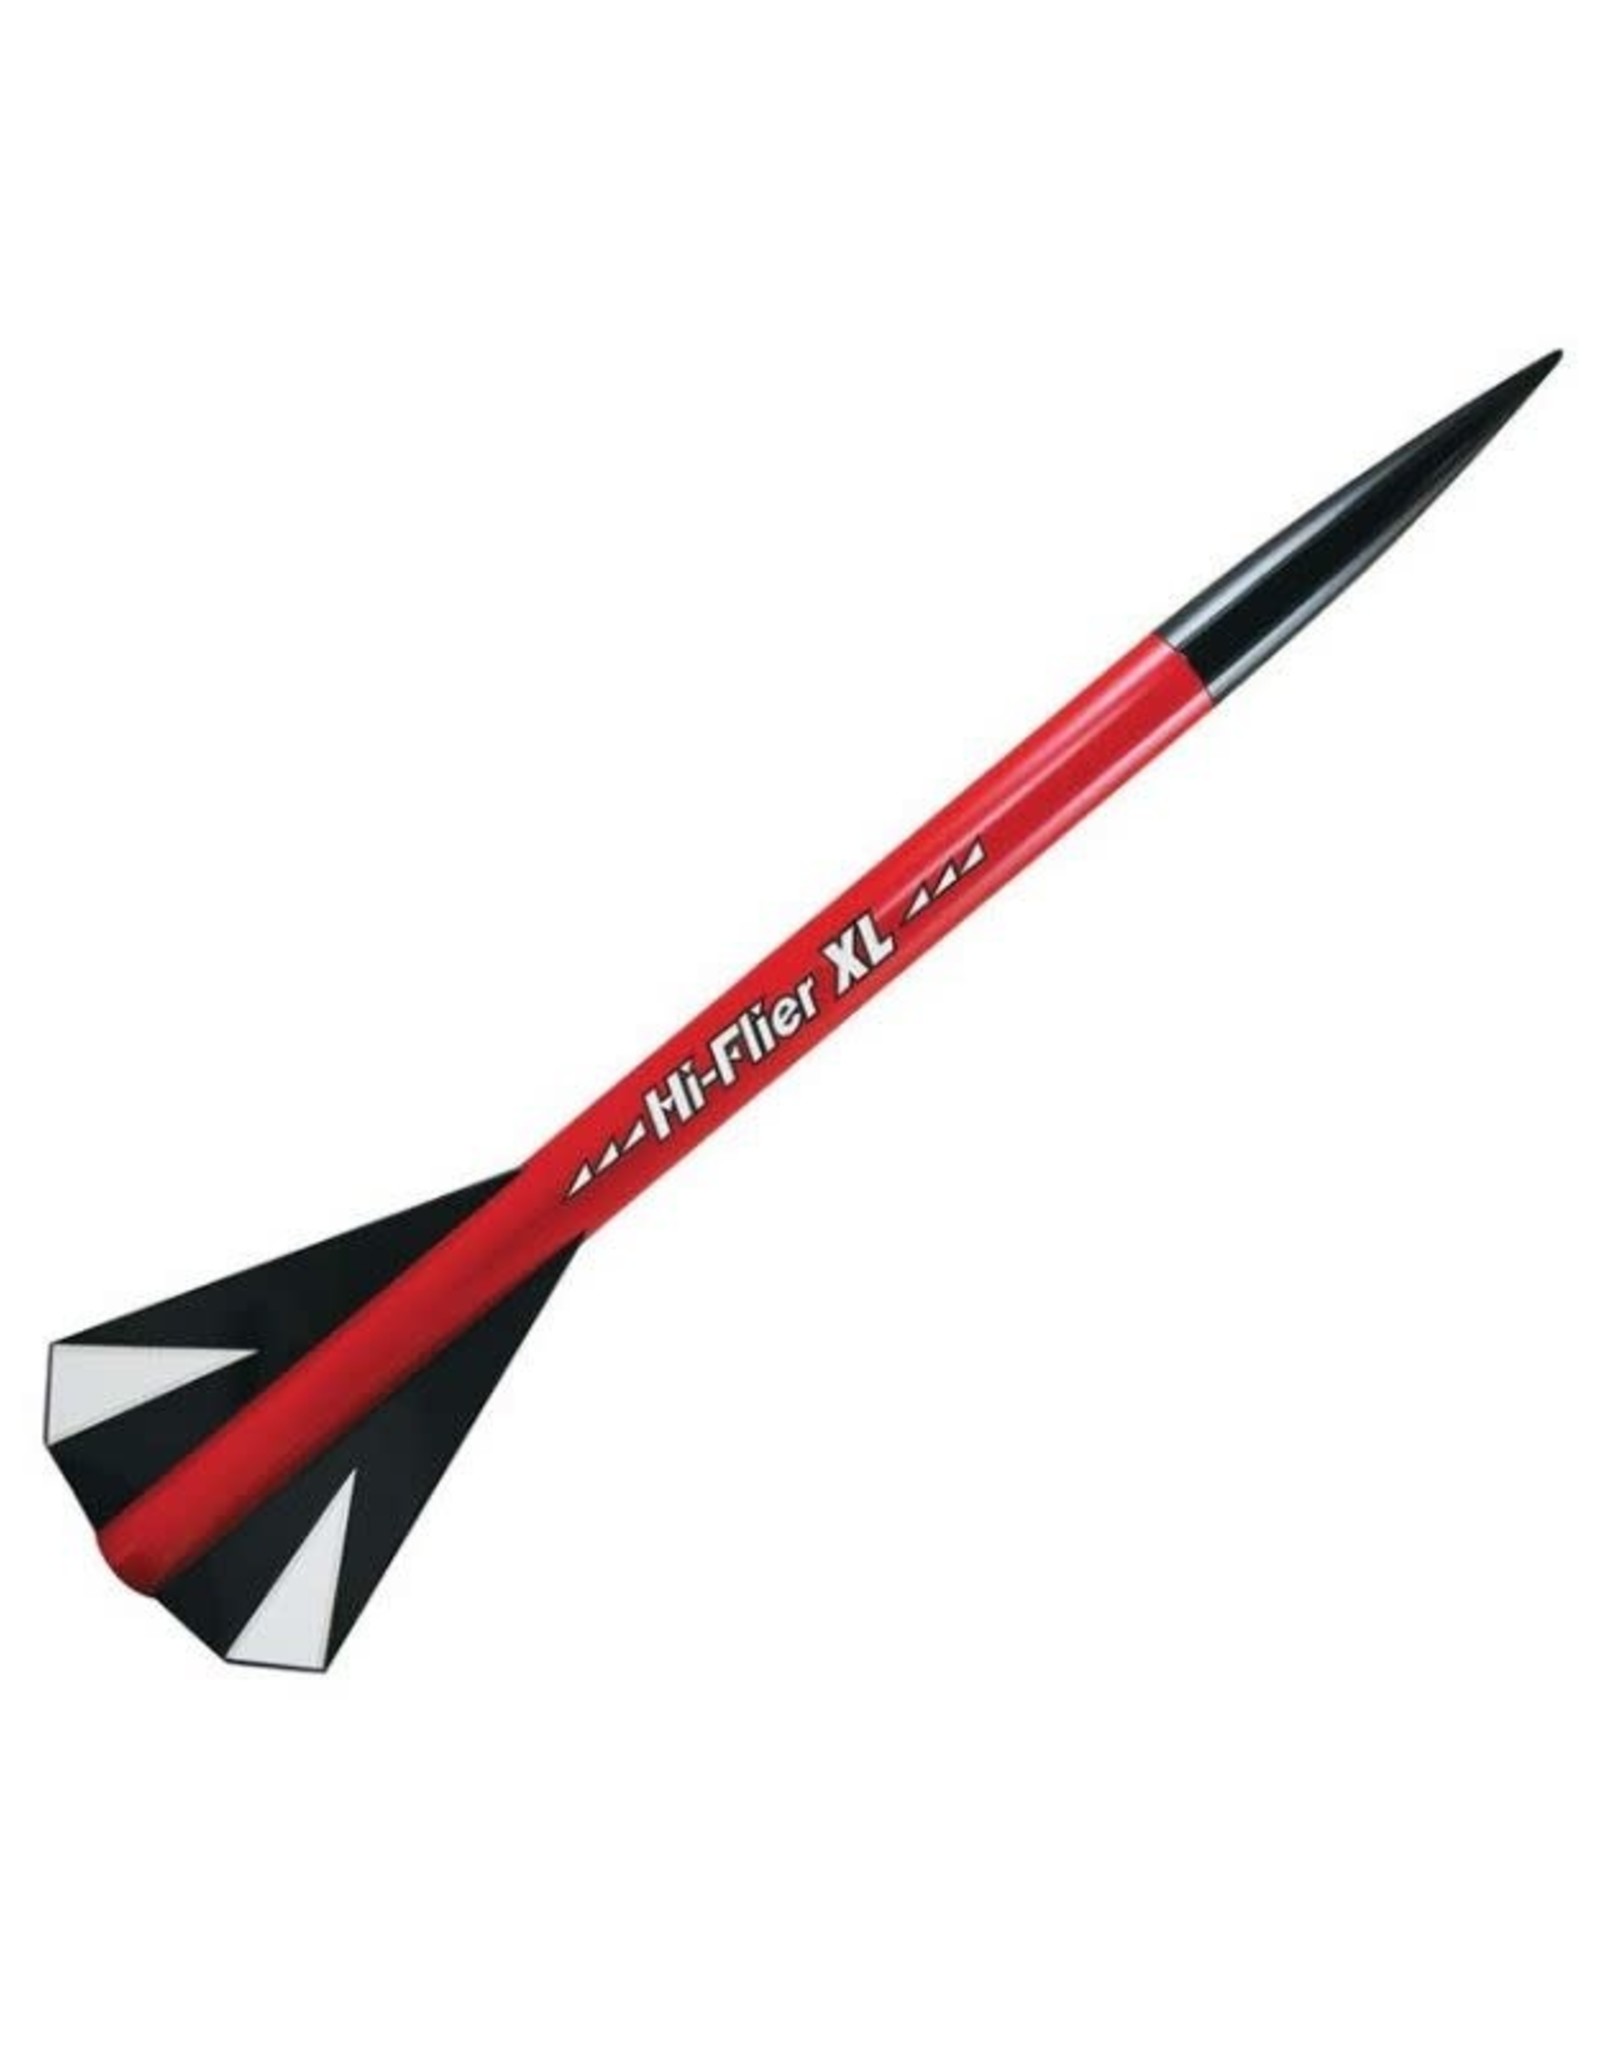 Hi-Flier XL Rocket Kit (Skill Level 1)